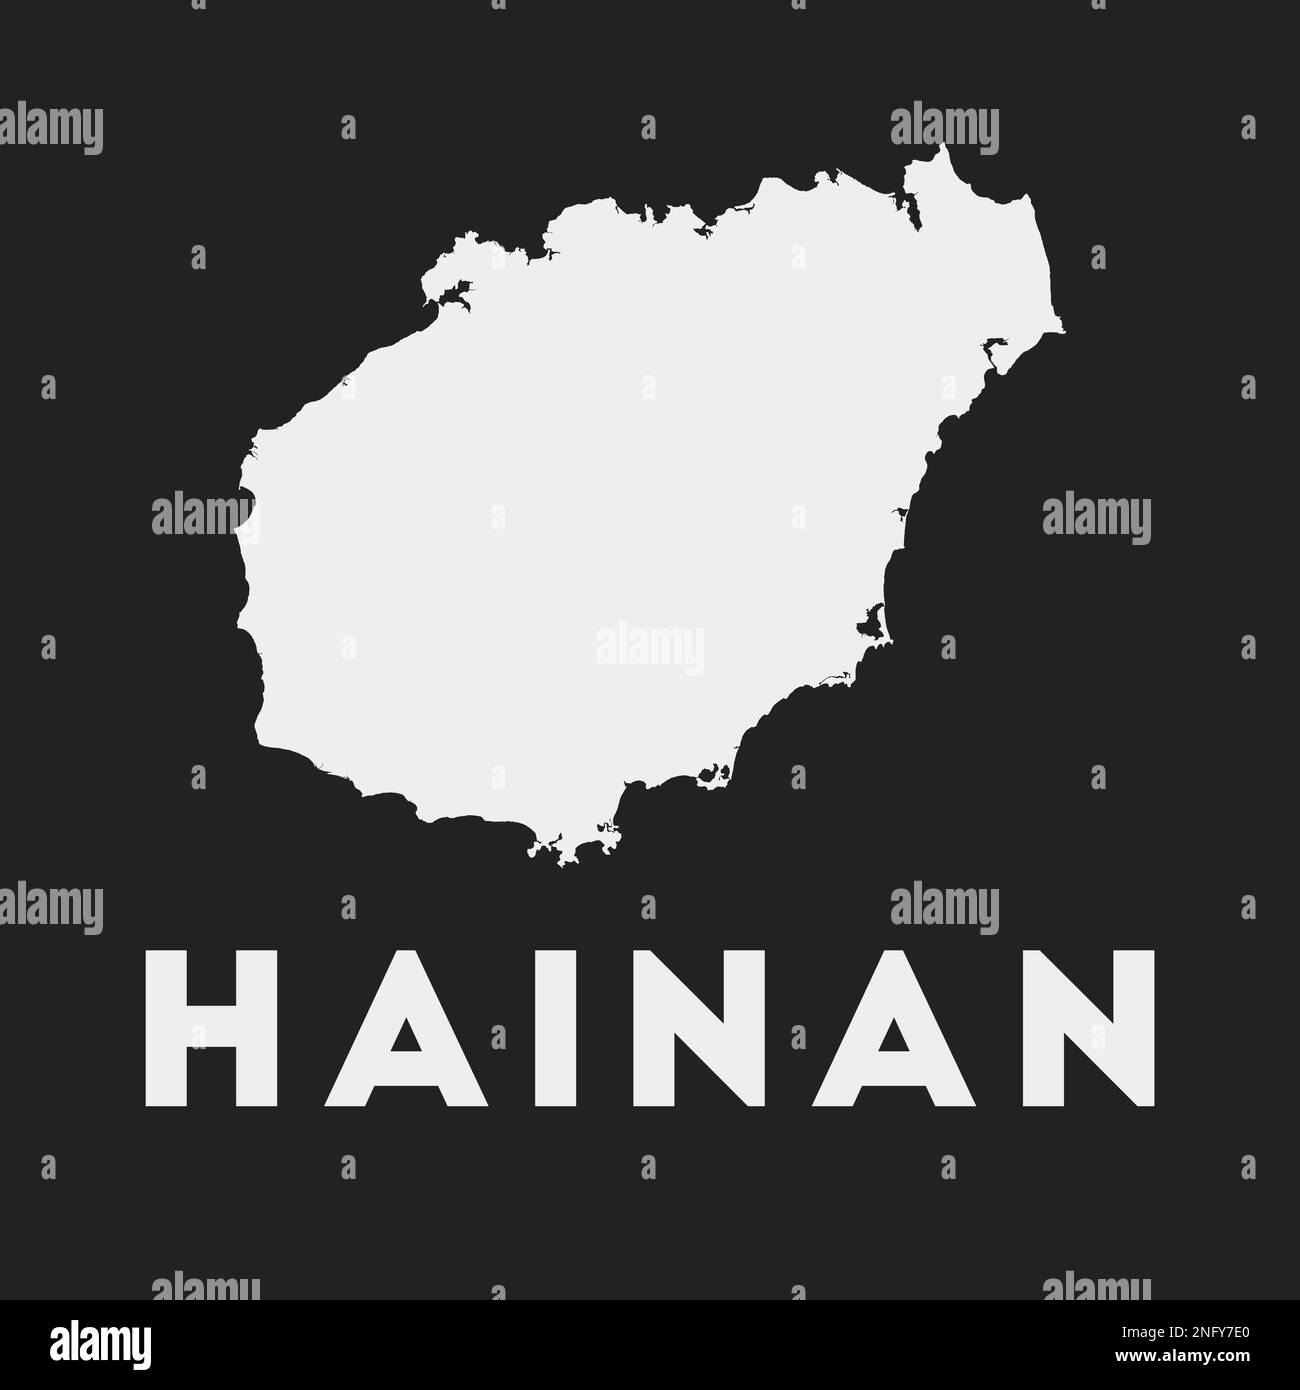 Hainan-Symbol. Inselkarte auf dunklem Hintergrund. Stilvolle Hainan Karte mit Inselname. Vektordarstellung. Stock Vektor